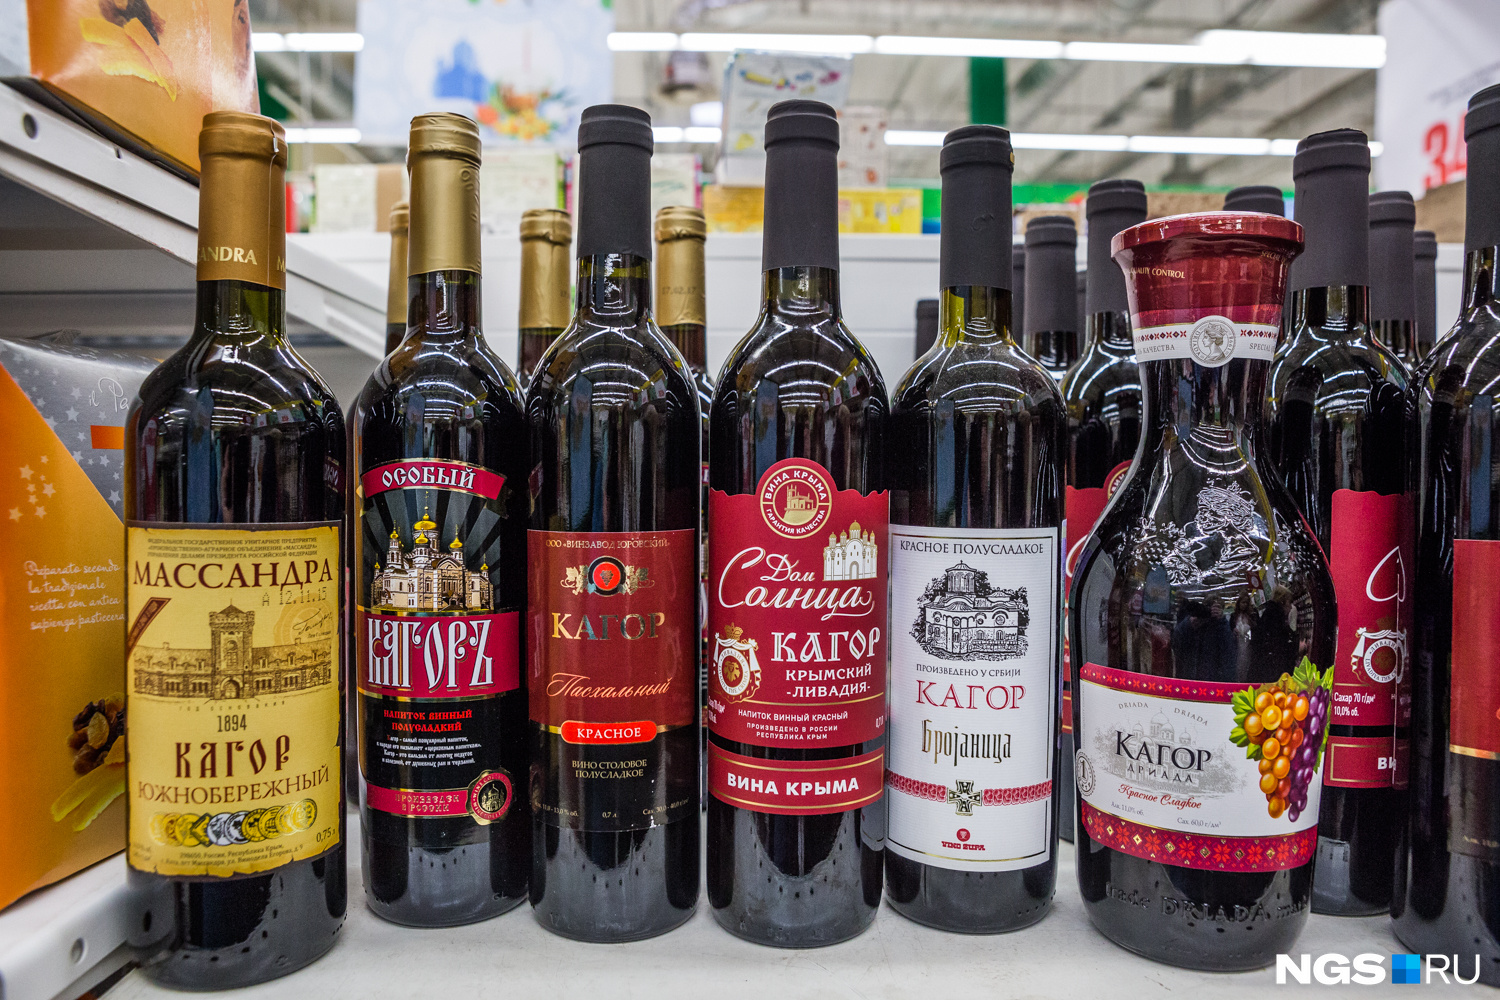 Вино кагор купить. Вино кагор красное. Кагор Херес крепленое вино. Вино кагор российское крепленое. Вино кагор красное российское крепленое.